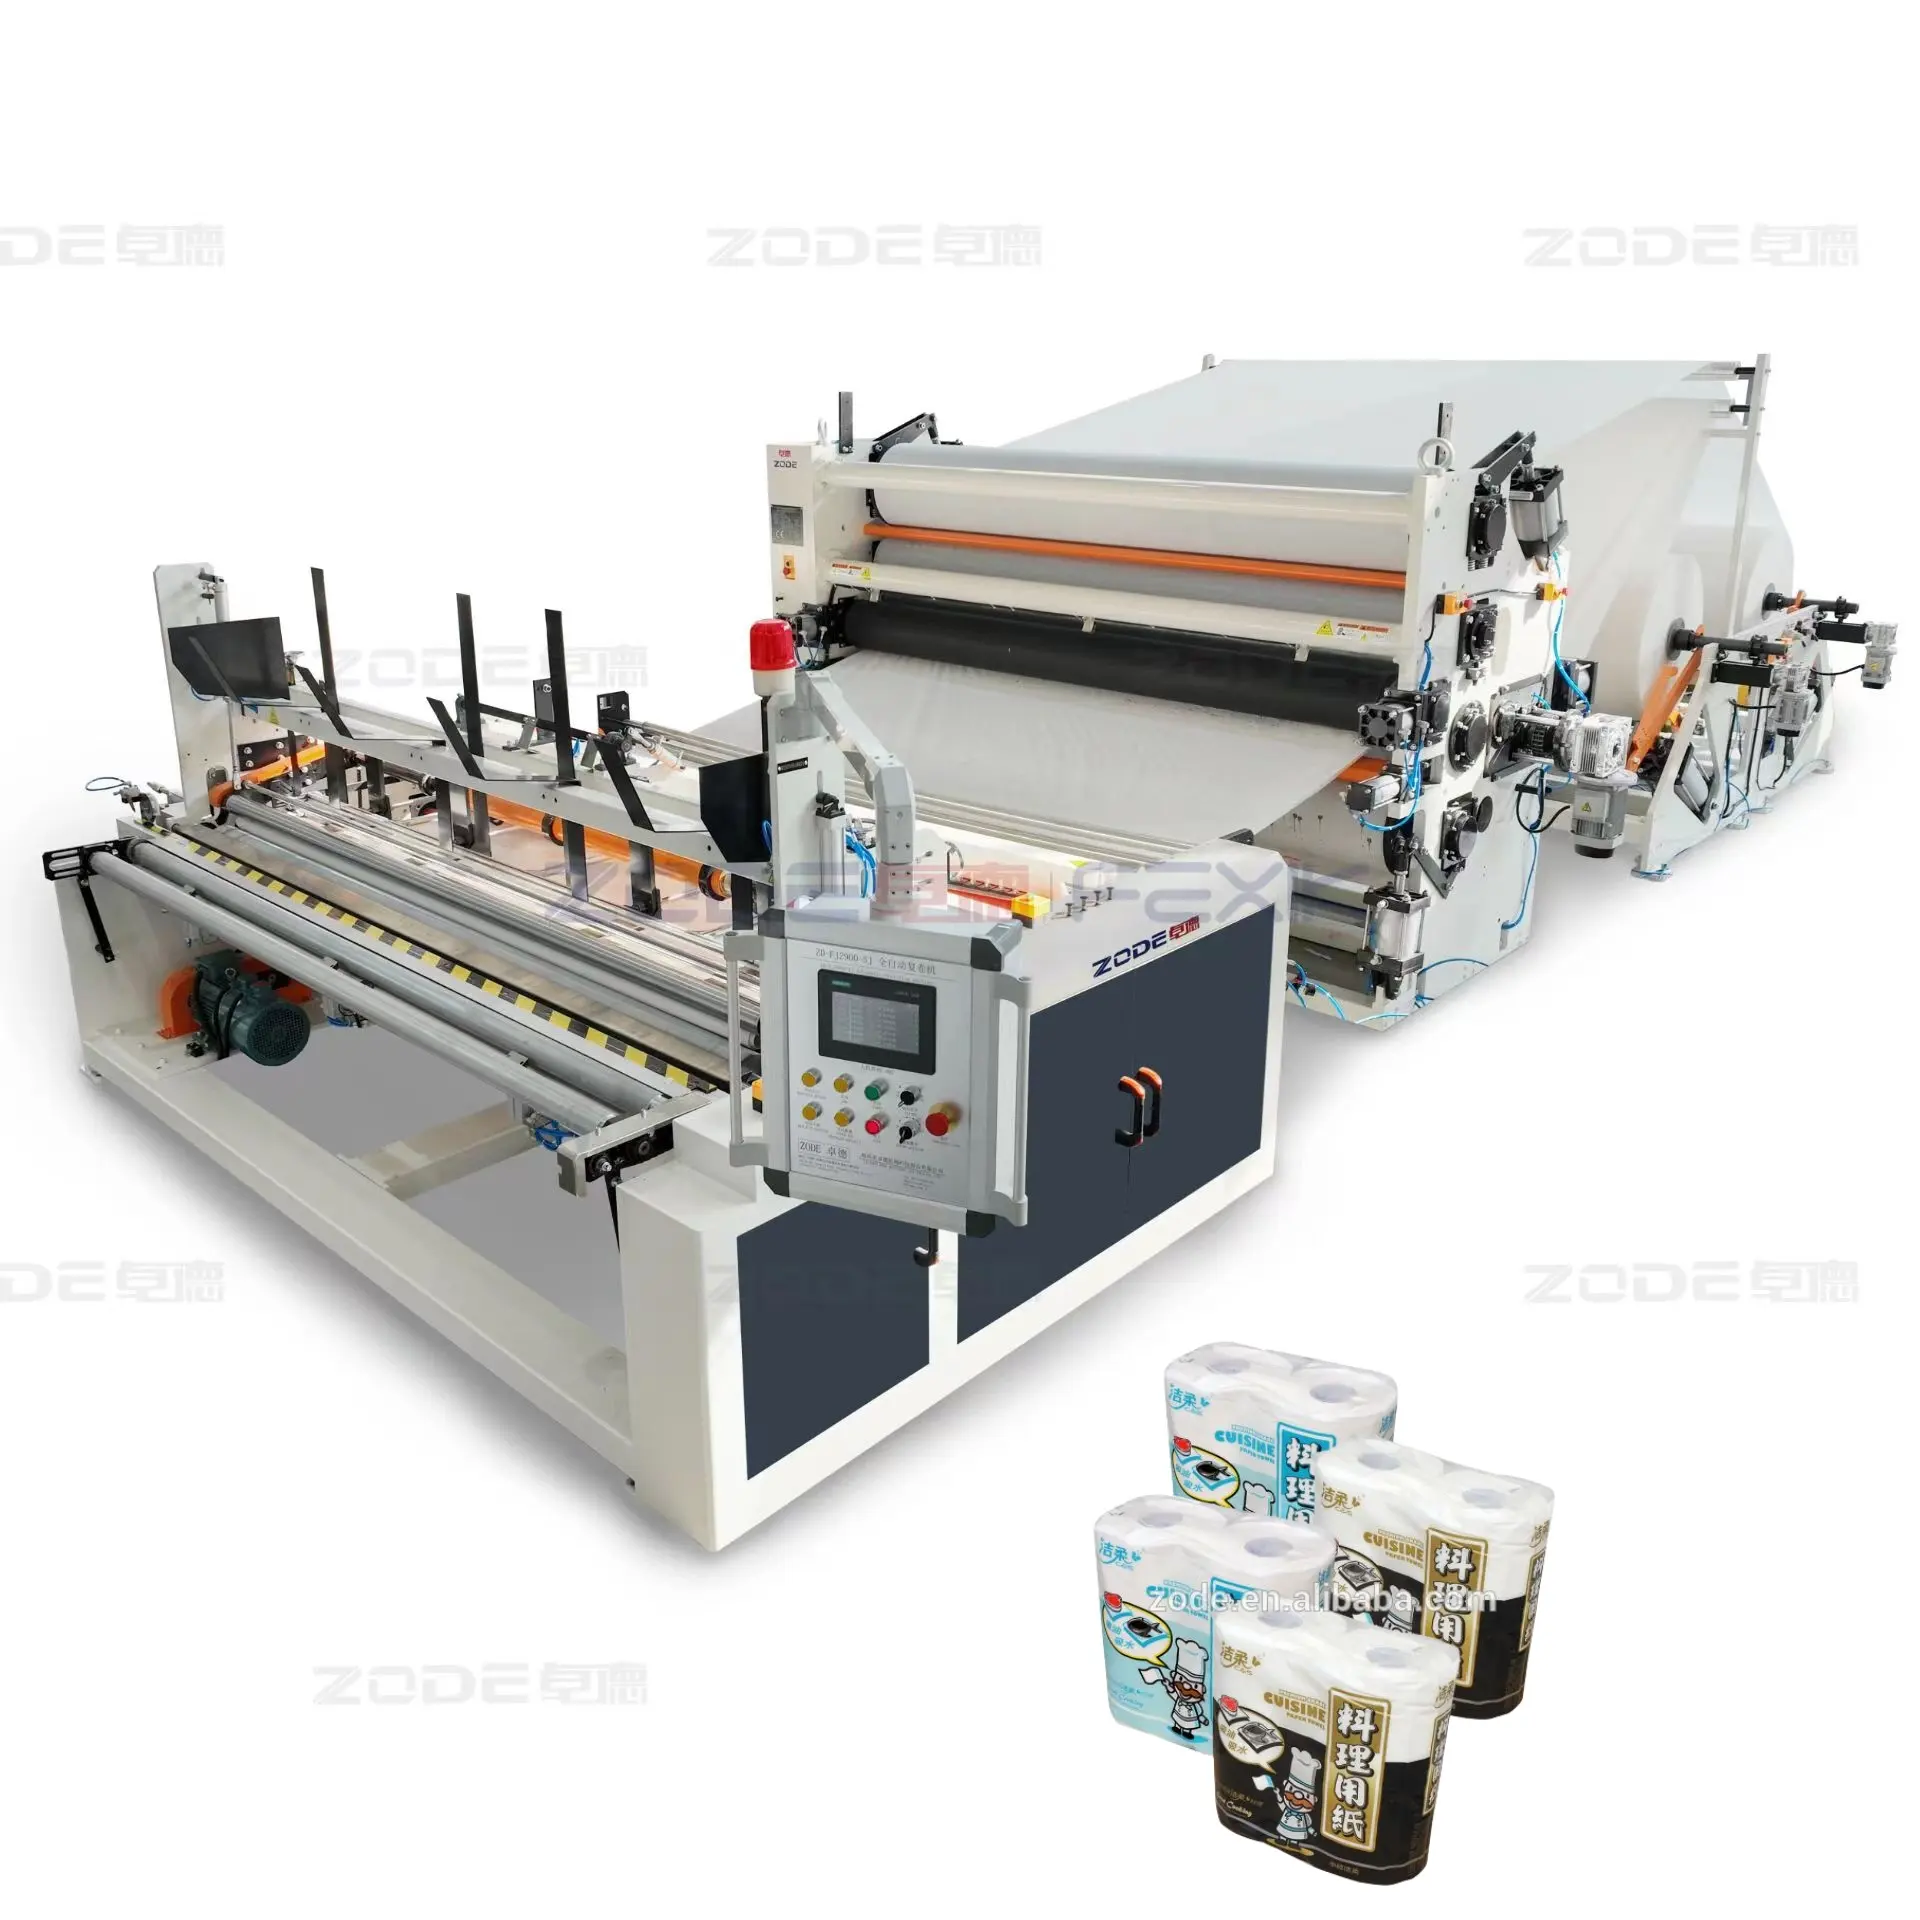 FEXIK ผลิตภัณฑ์ขายร้อนกระดาษทิชชูทำอุปกรณ์การผลิตสายการผลิตอัตโนมัติเต็มรูปแบบ90-300 Mm